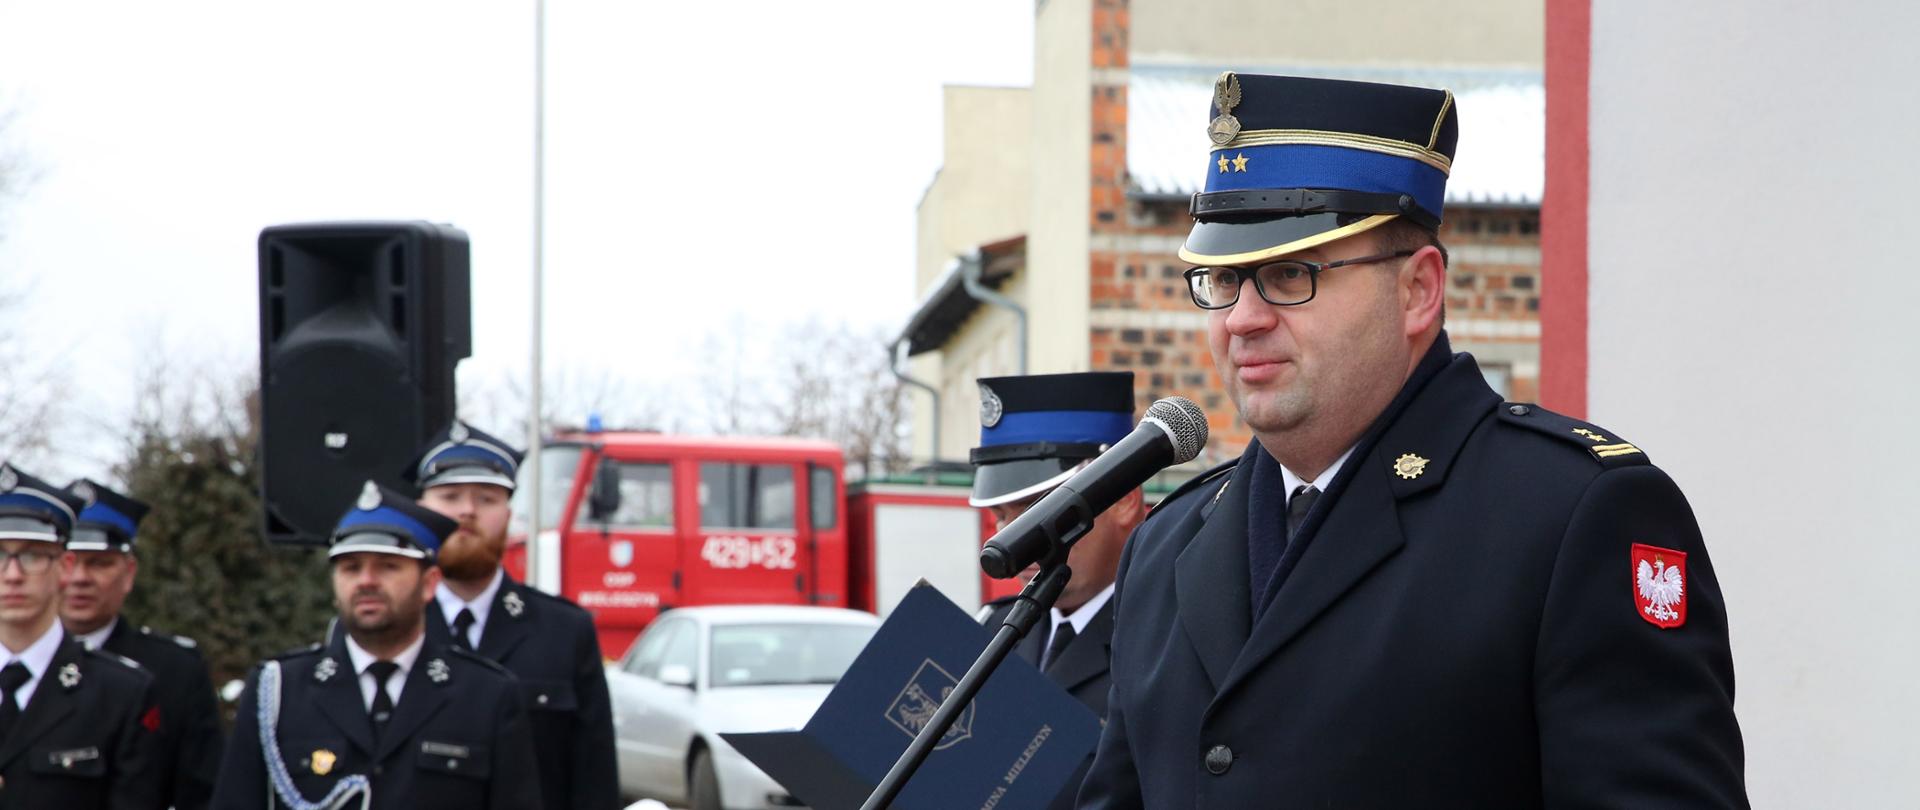 strażak mężczyzna w rogatywce i w płaszczu stoi przed mikrofonem , za nim inny strażak w rogatywce trzyma w ręku niebieską teczkę, w tle grupa strażaków w szeregu oraz samochód strażacki